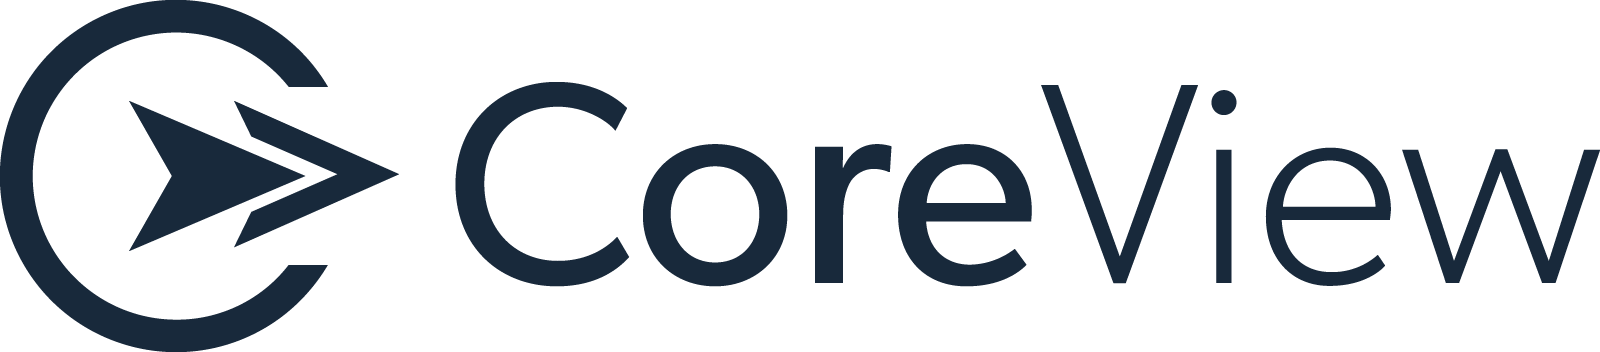 Coreview-logo